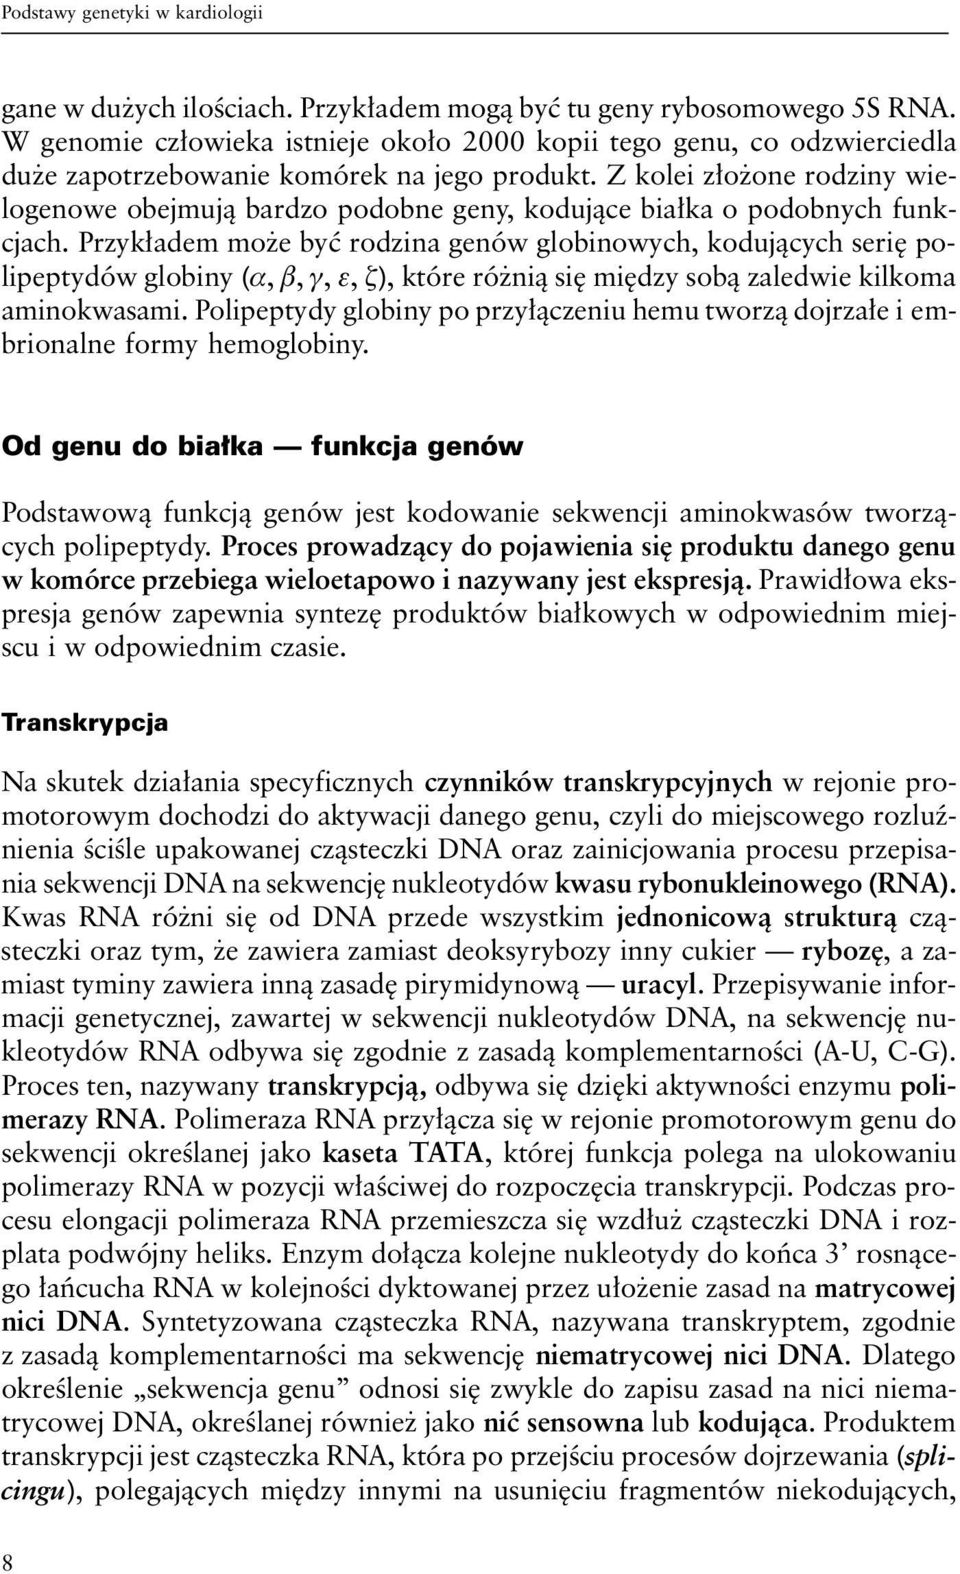 Z kolei złożone rodziny wielogenowe obejmują bardzo podobne geny, kodujące białka o podobnych funkcjach.